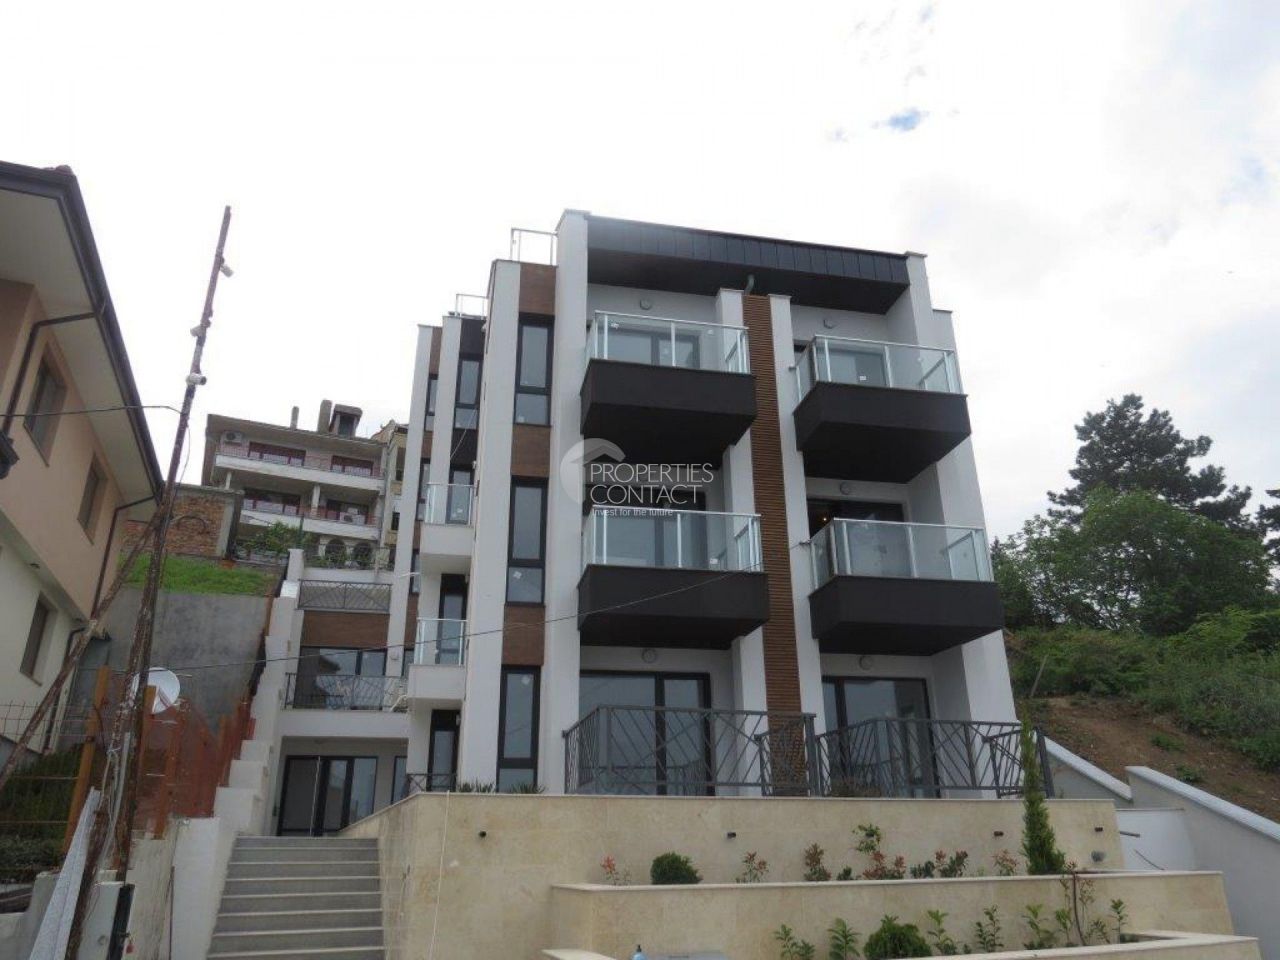 Апартаменты в Созополе, Болгария, 65 м2 - фото 1